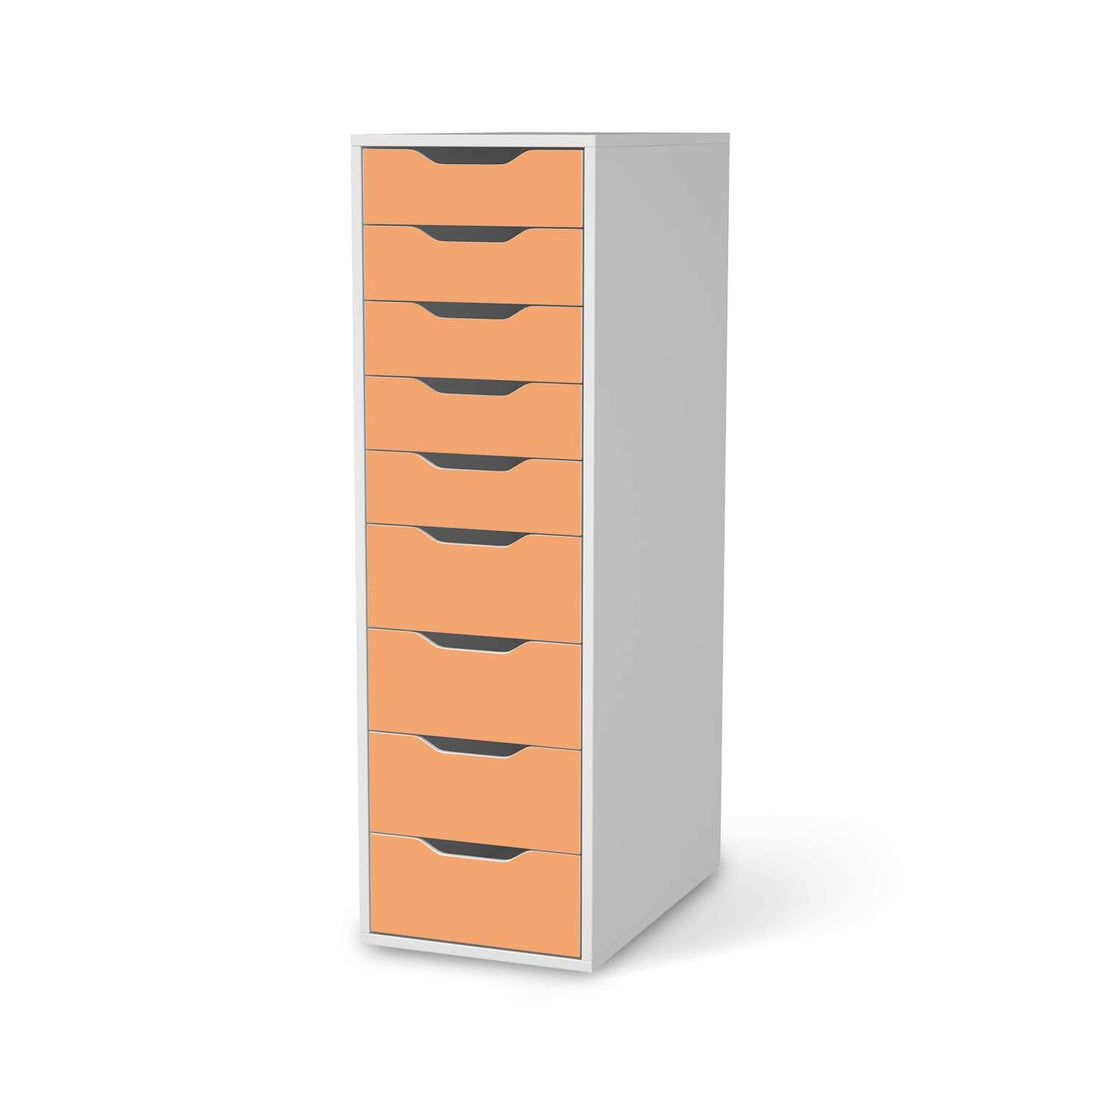 Folie für Möbel Orange Light - IKEA Alex 9 Schubladen - weiss